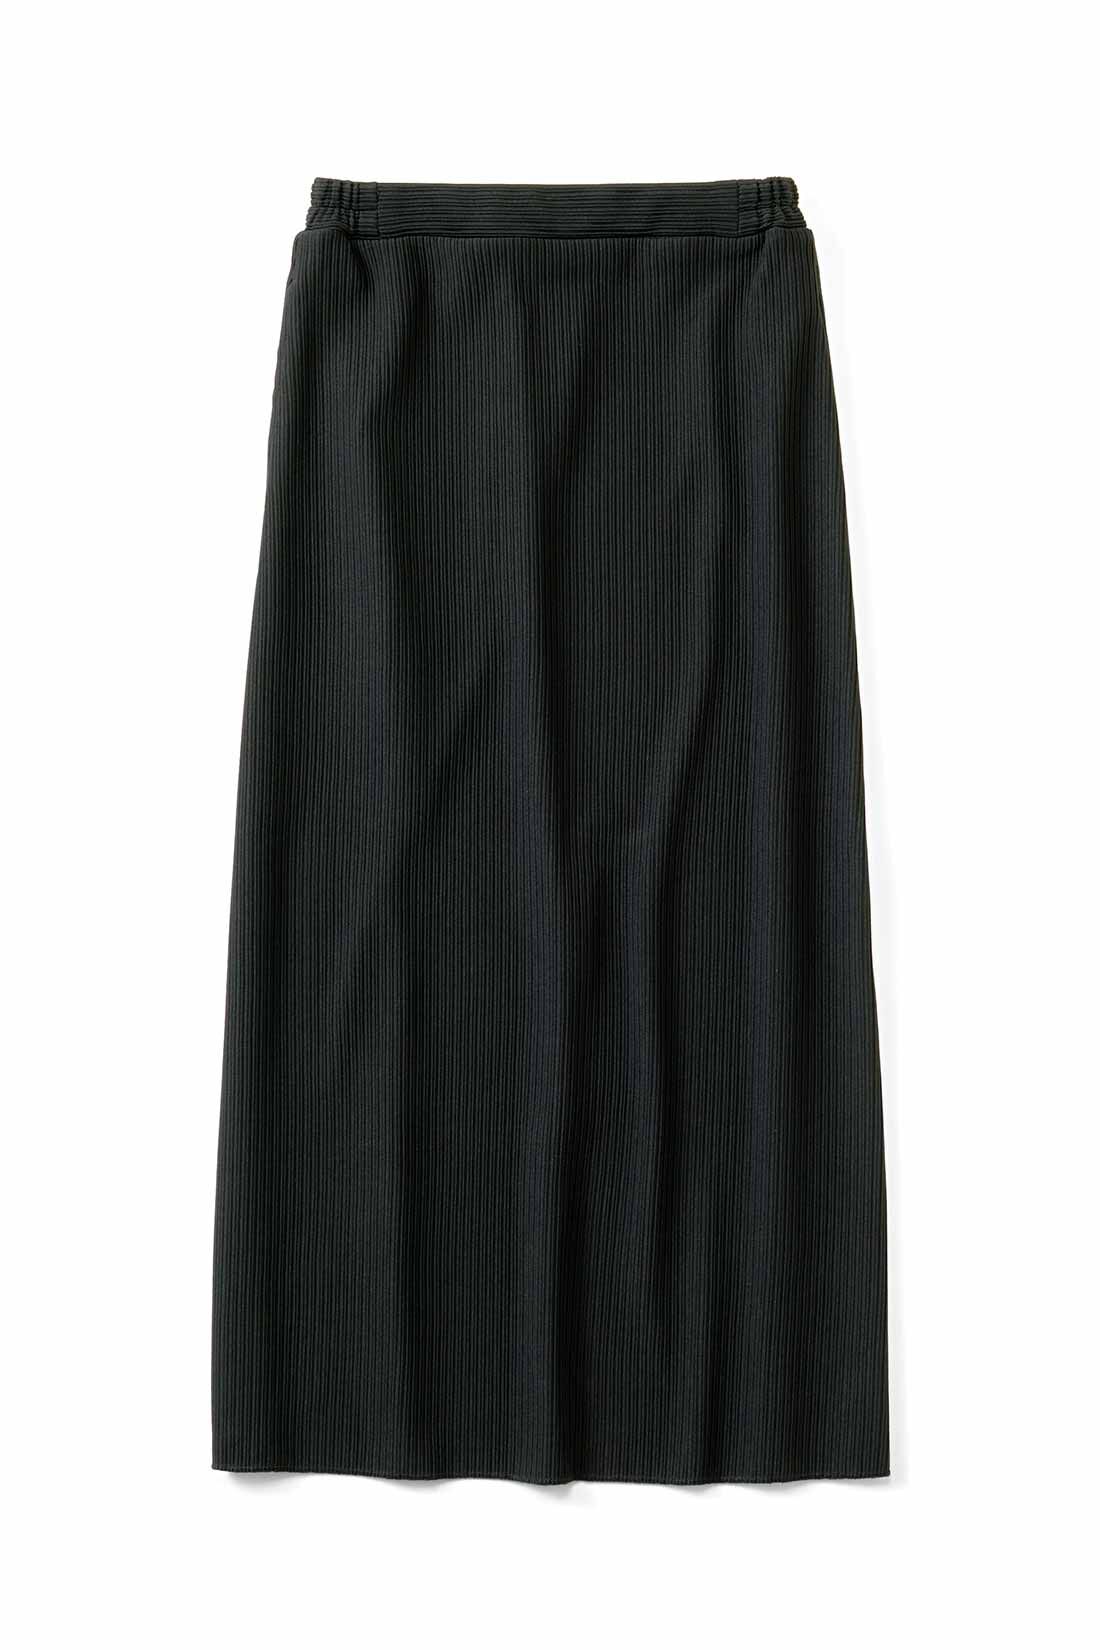 IEDIT[イディット]　ニットライクなリップルカットソー素材で仕立てた らくちんきれいなIラインスカートの会|〈ブラック〉